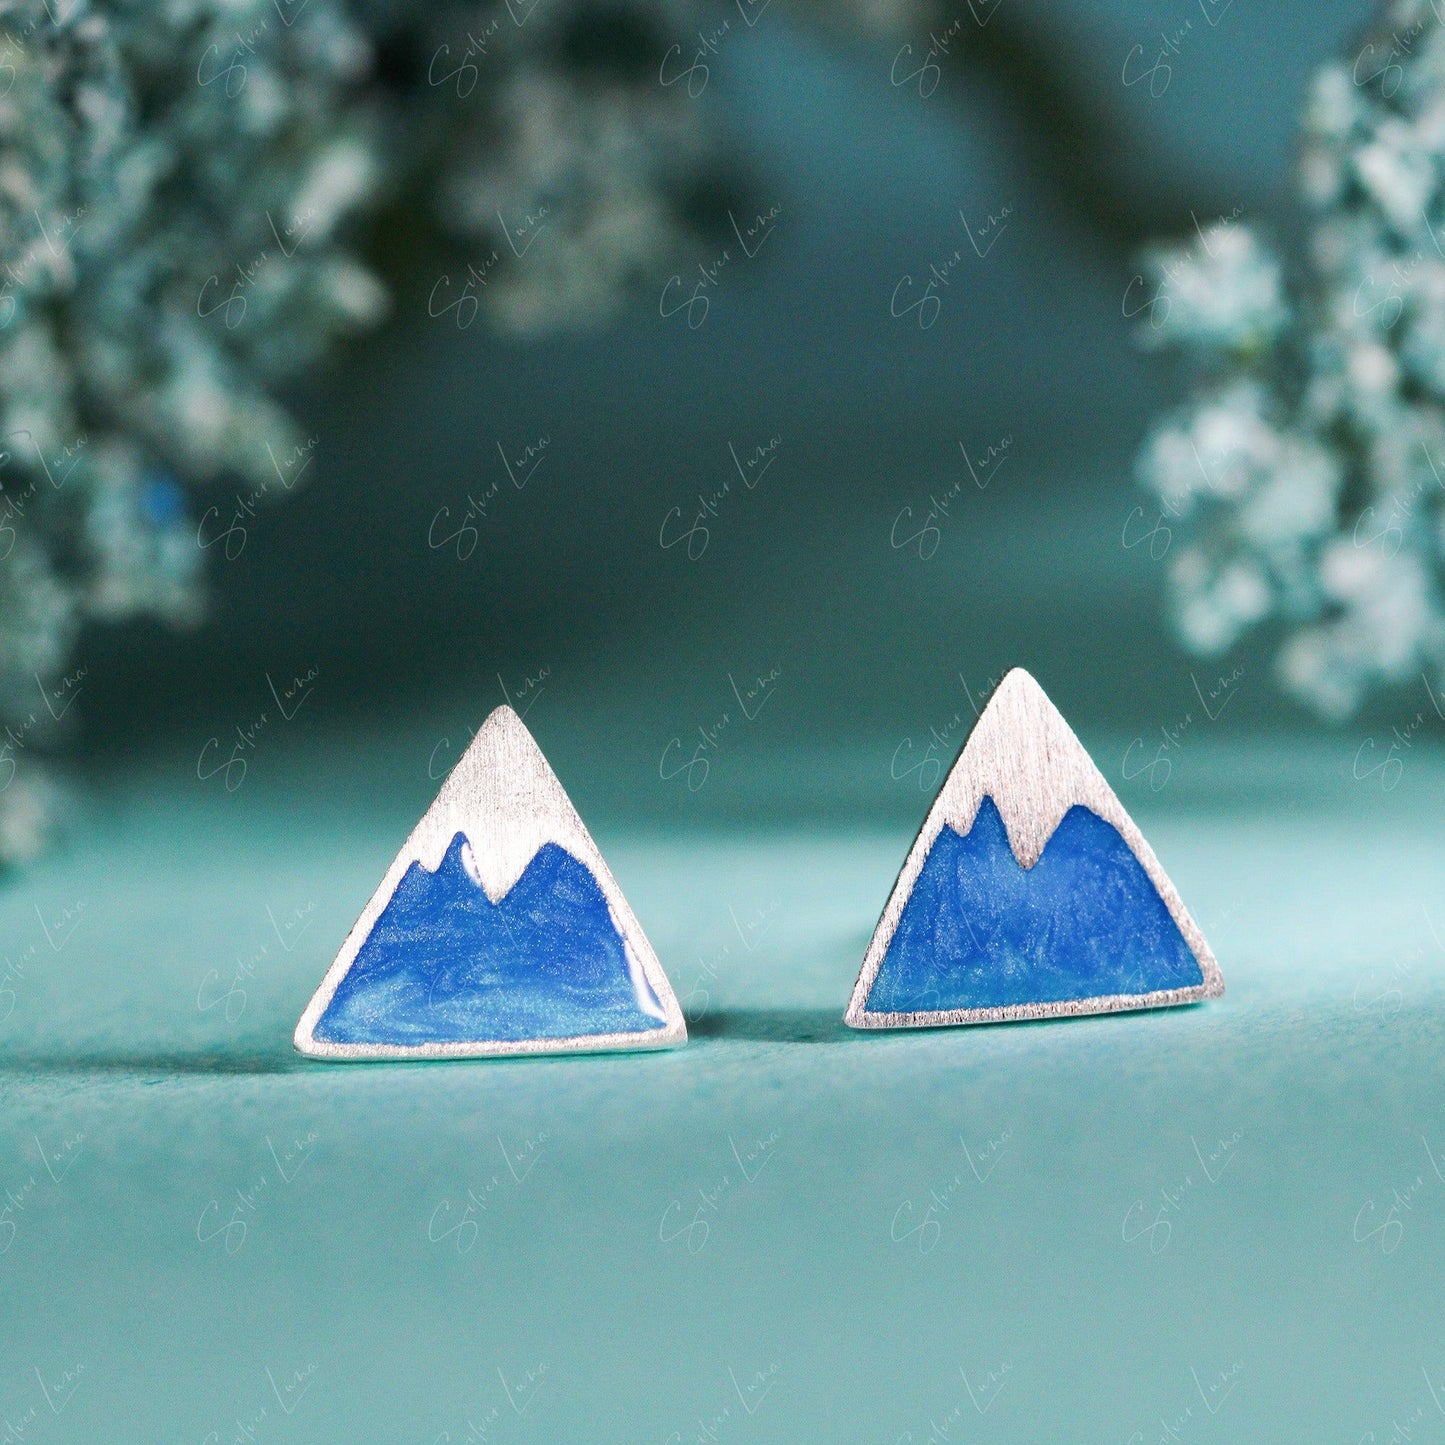 Fuji mountain triangle stud earrings